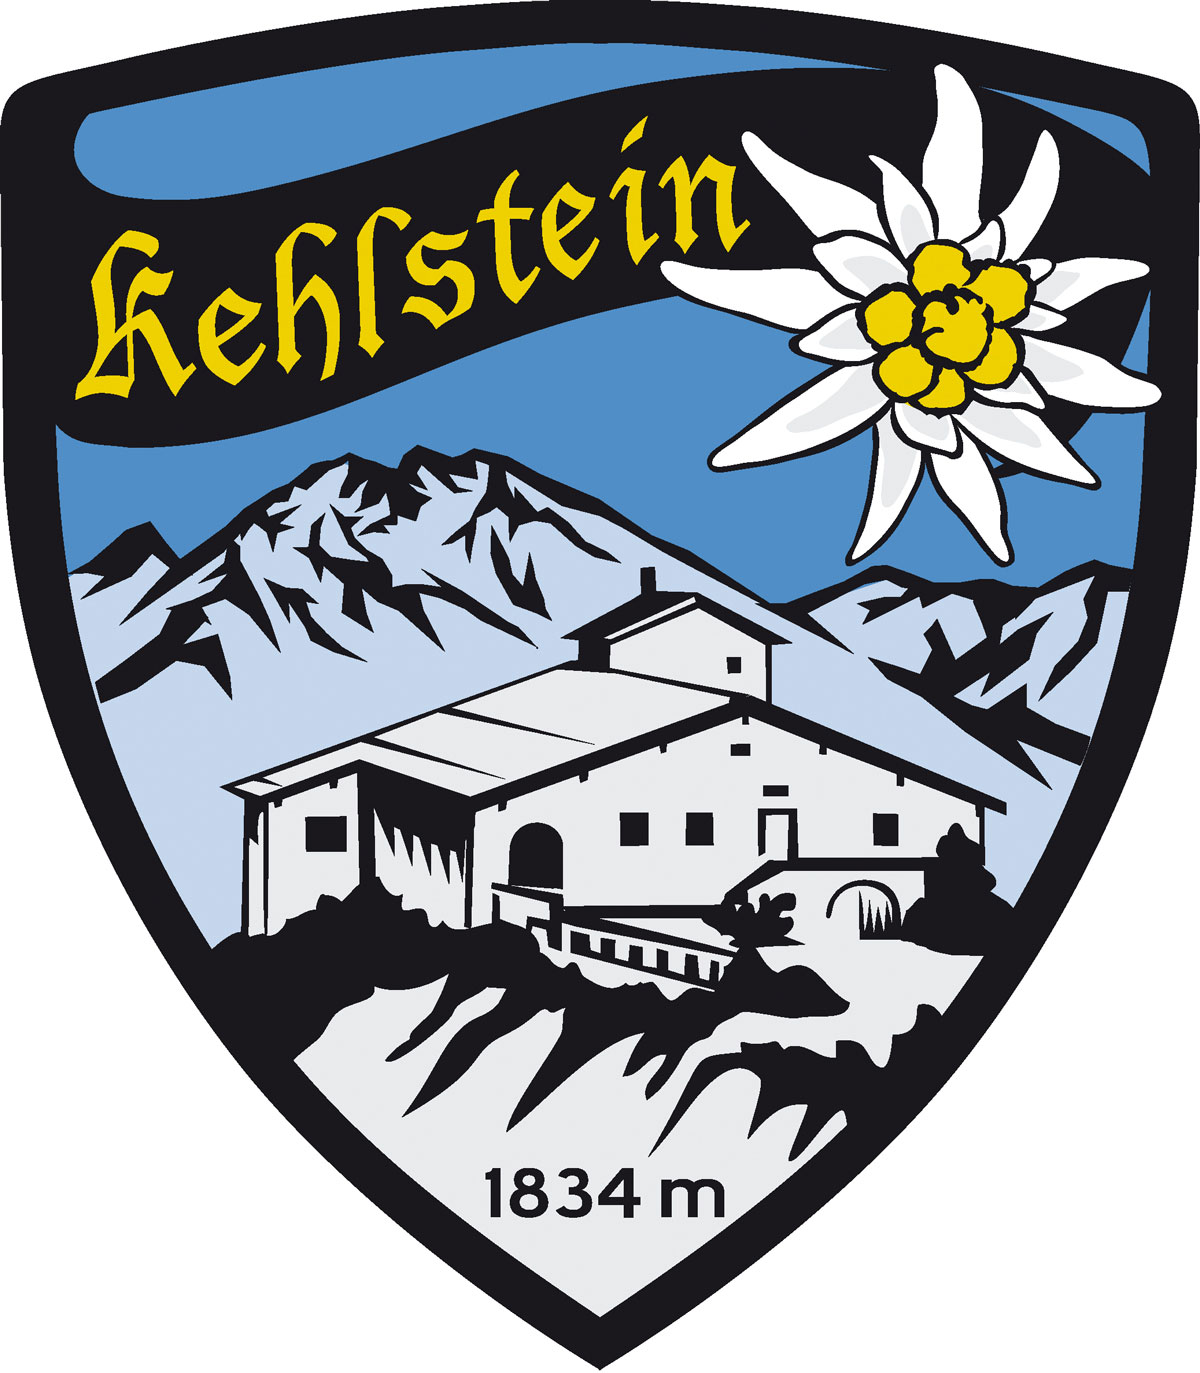 Wappen Aufkleber Sticker Kehlstein - Kehlsteinhaus - Eagles Nest  - Motiv blau